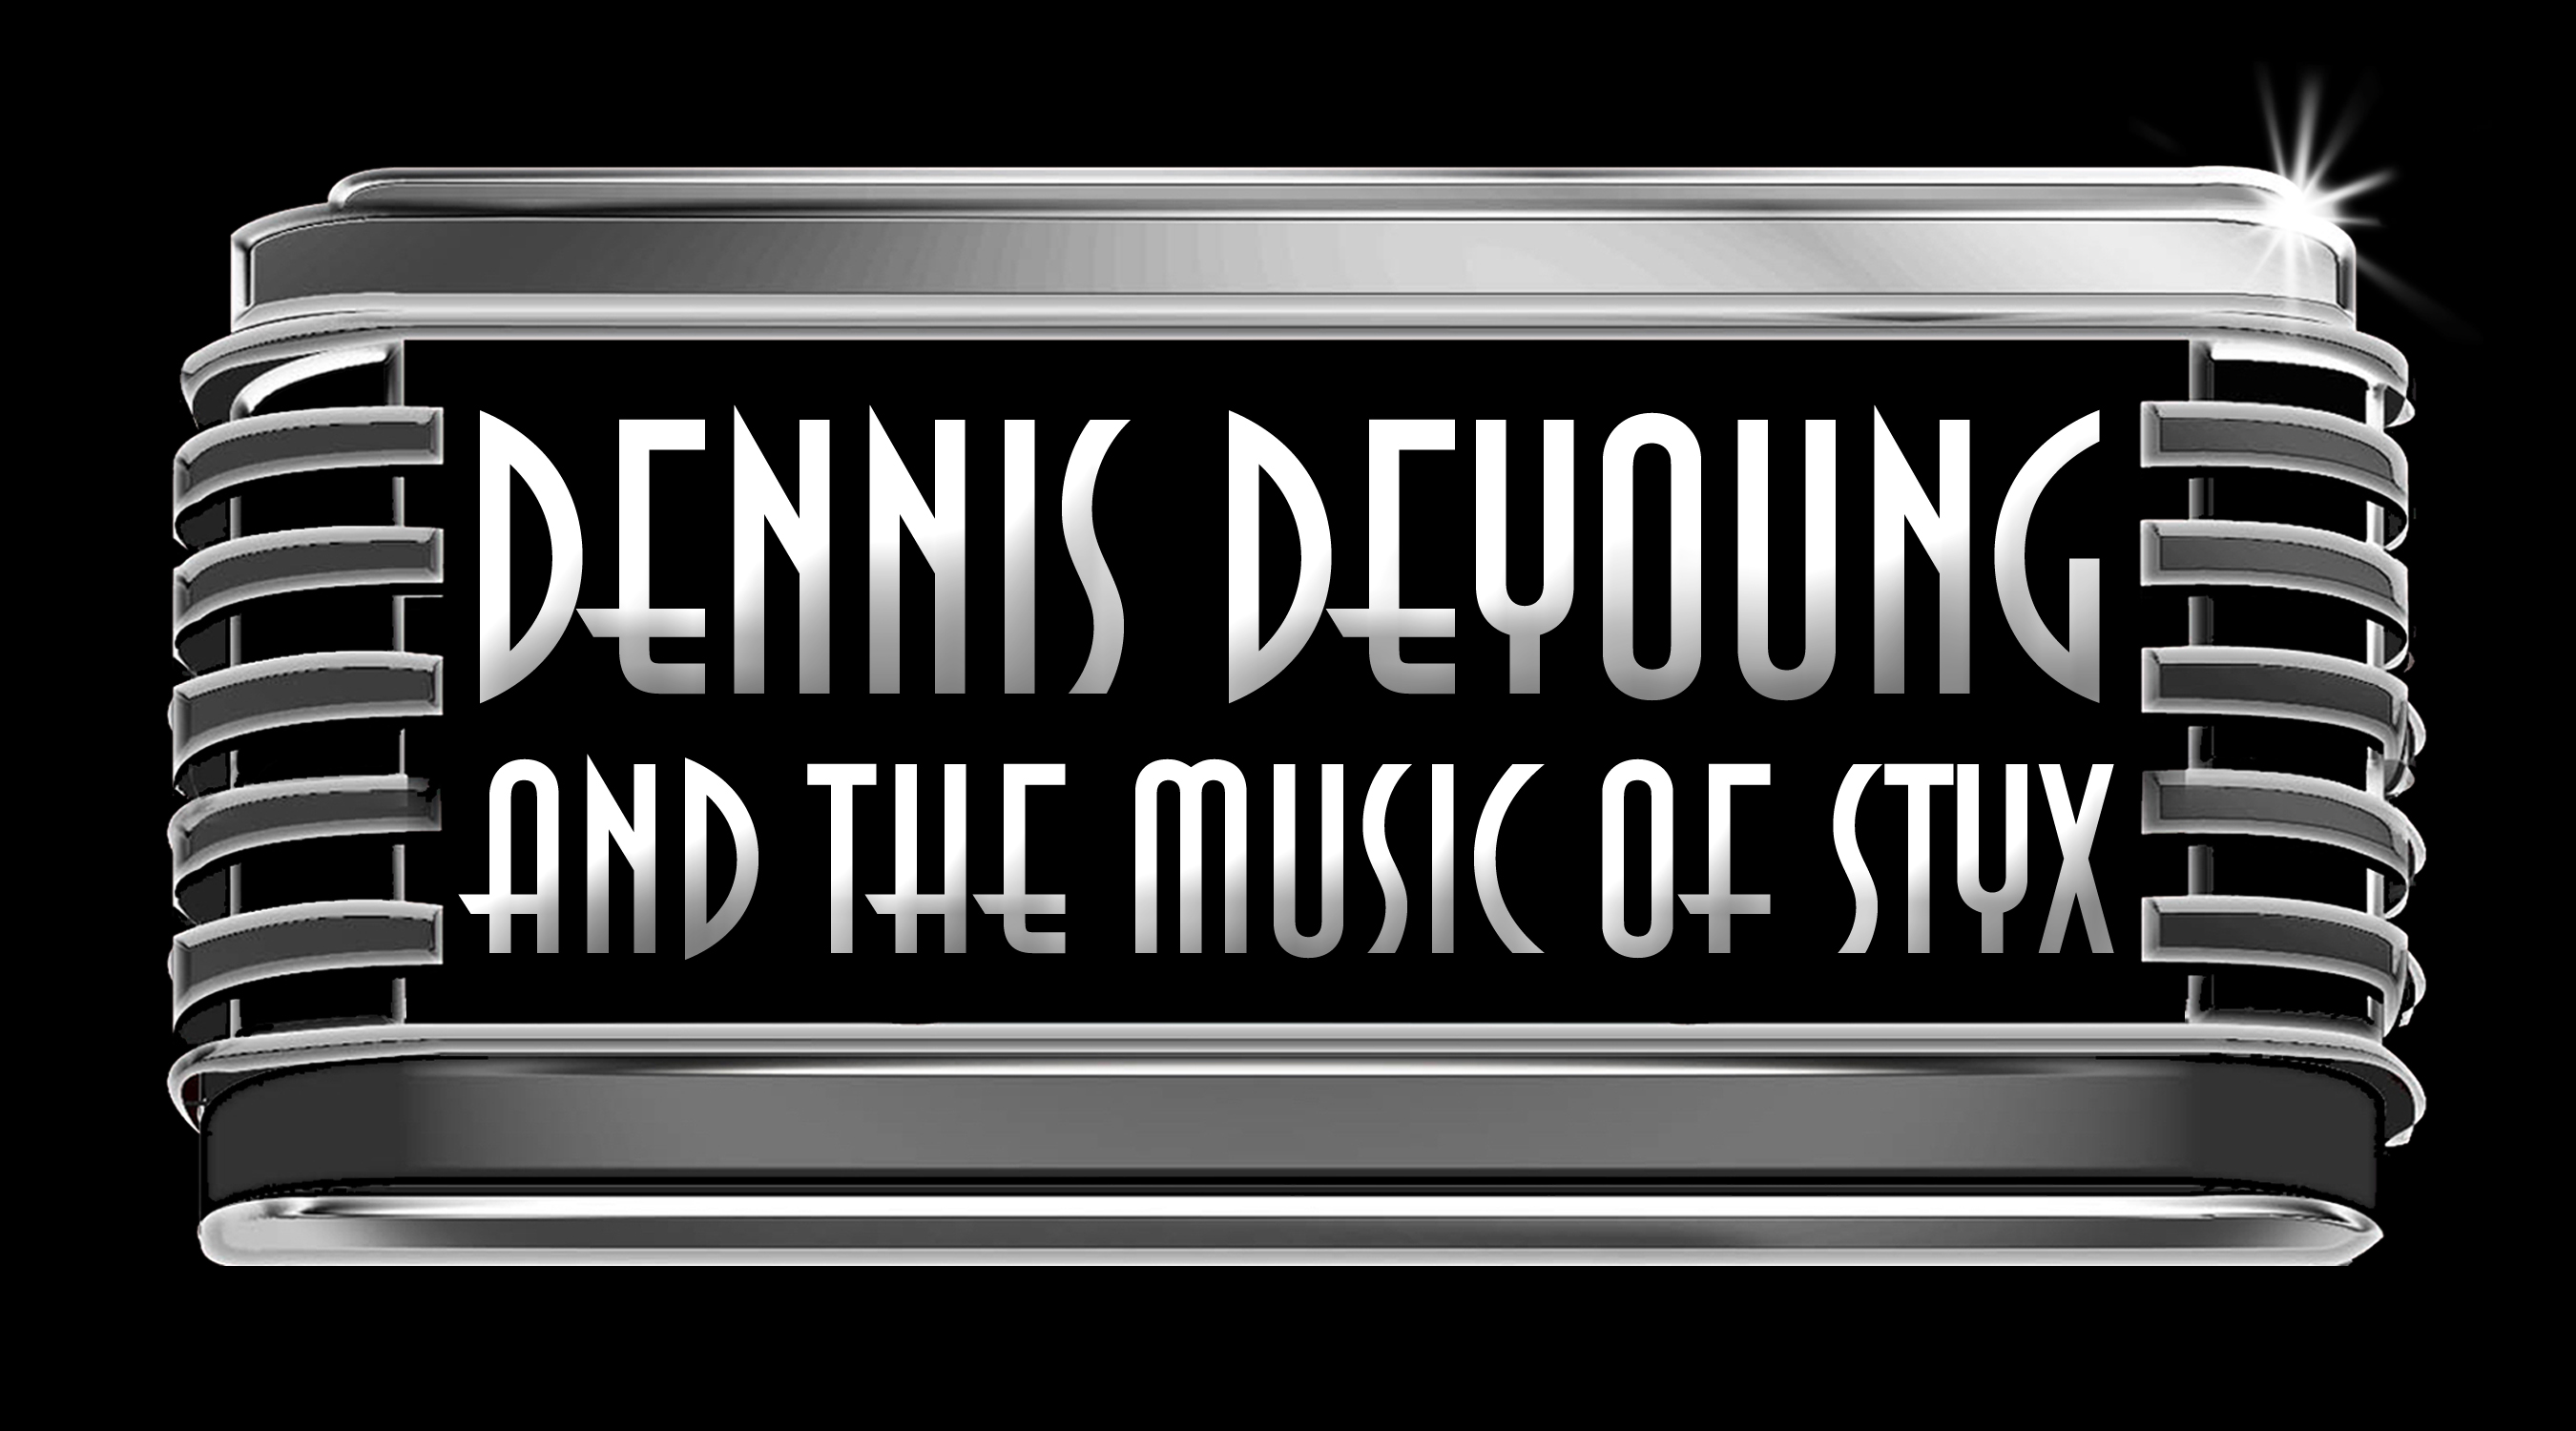 Dennis DeYoung Interview